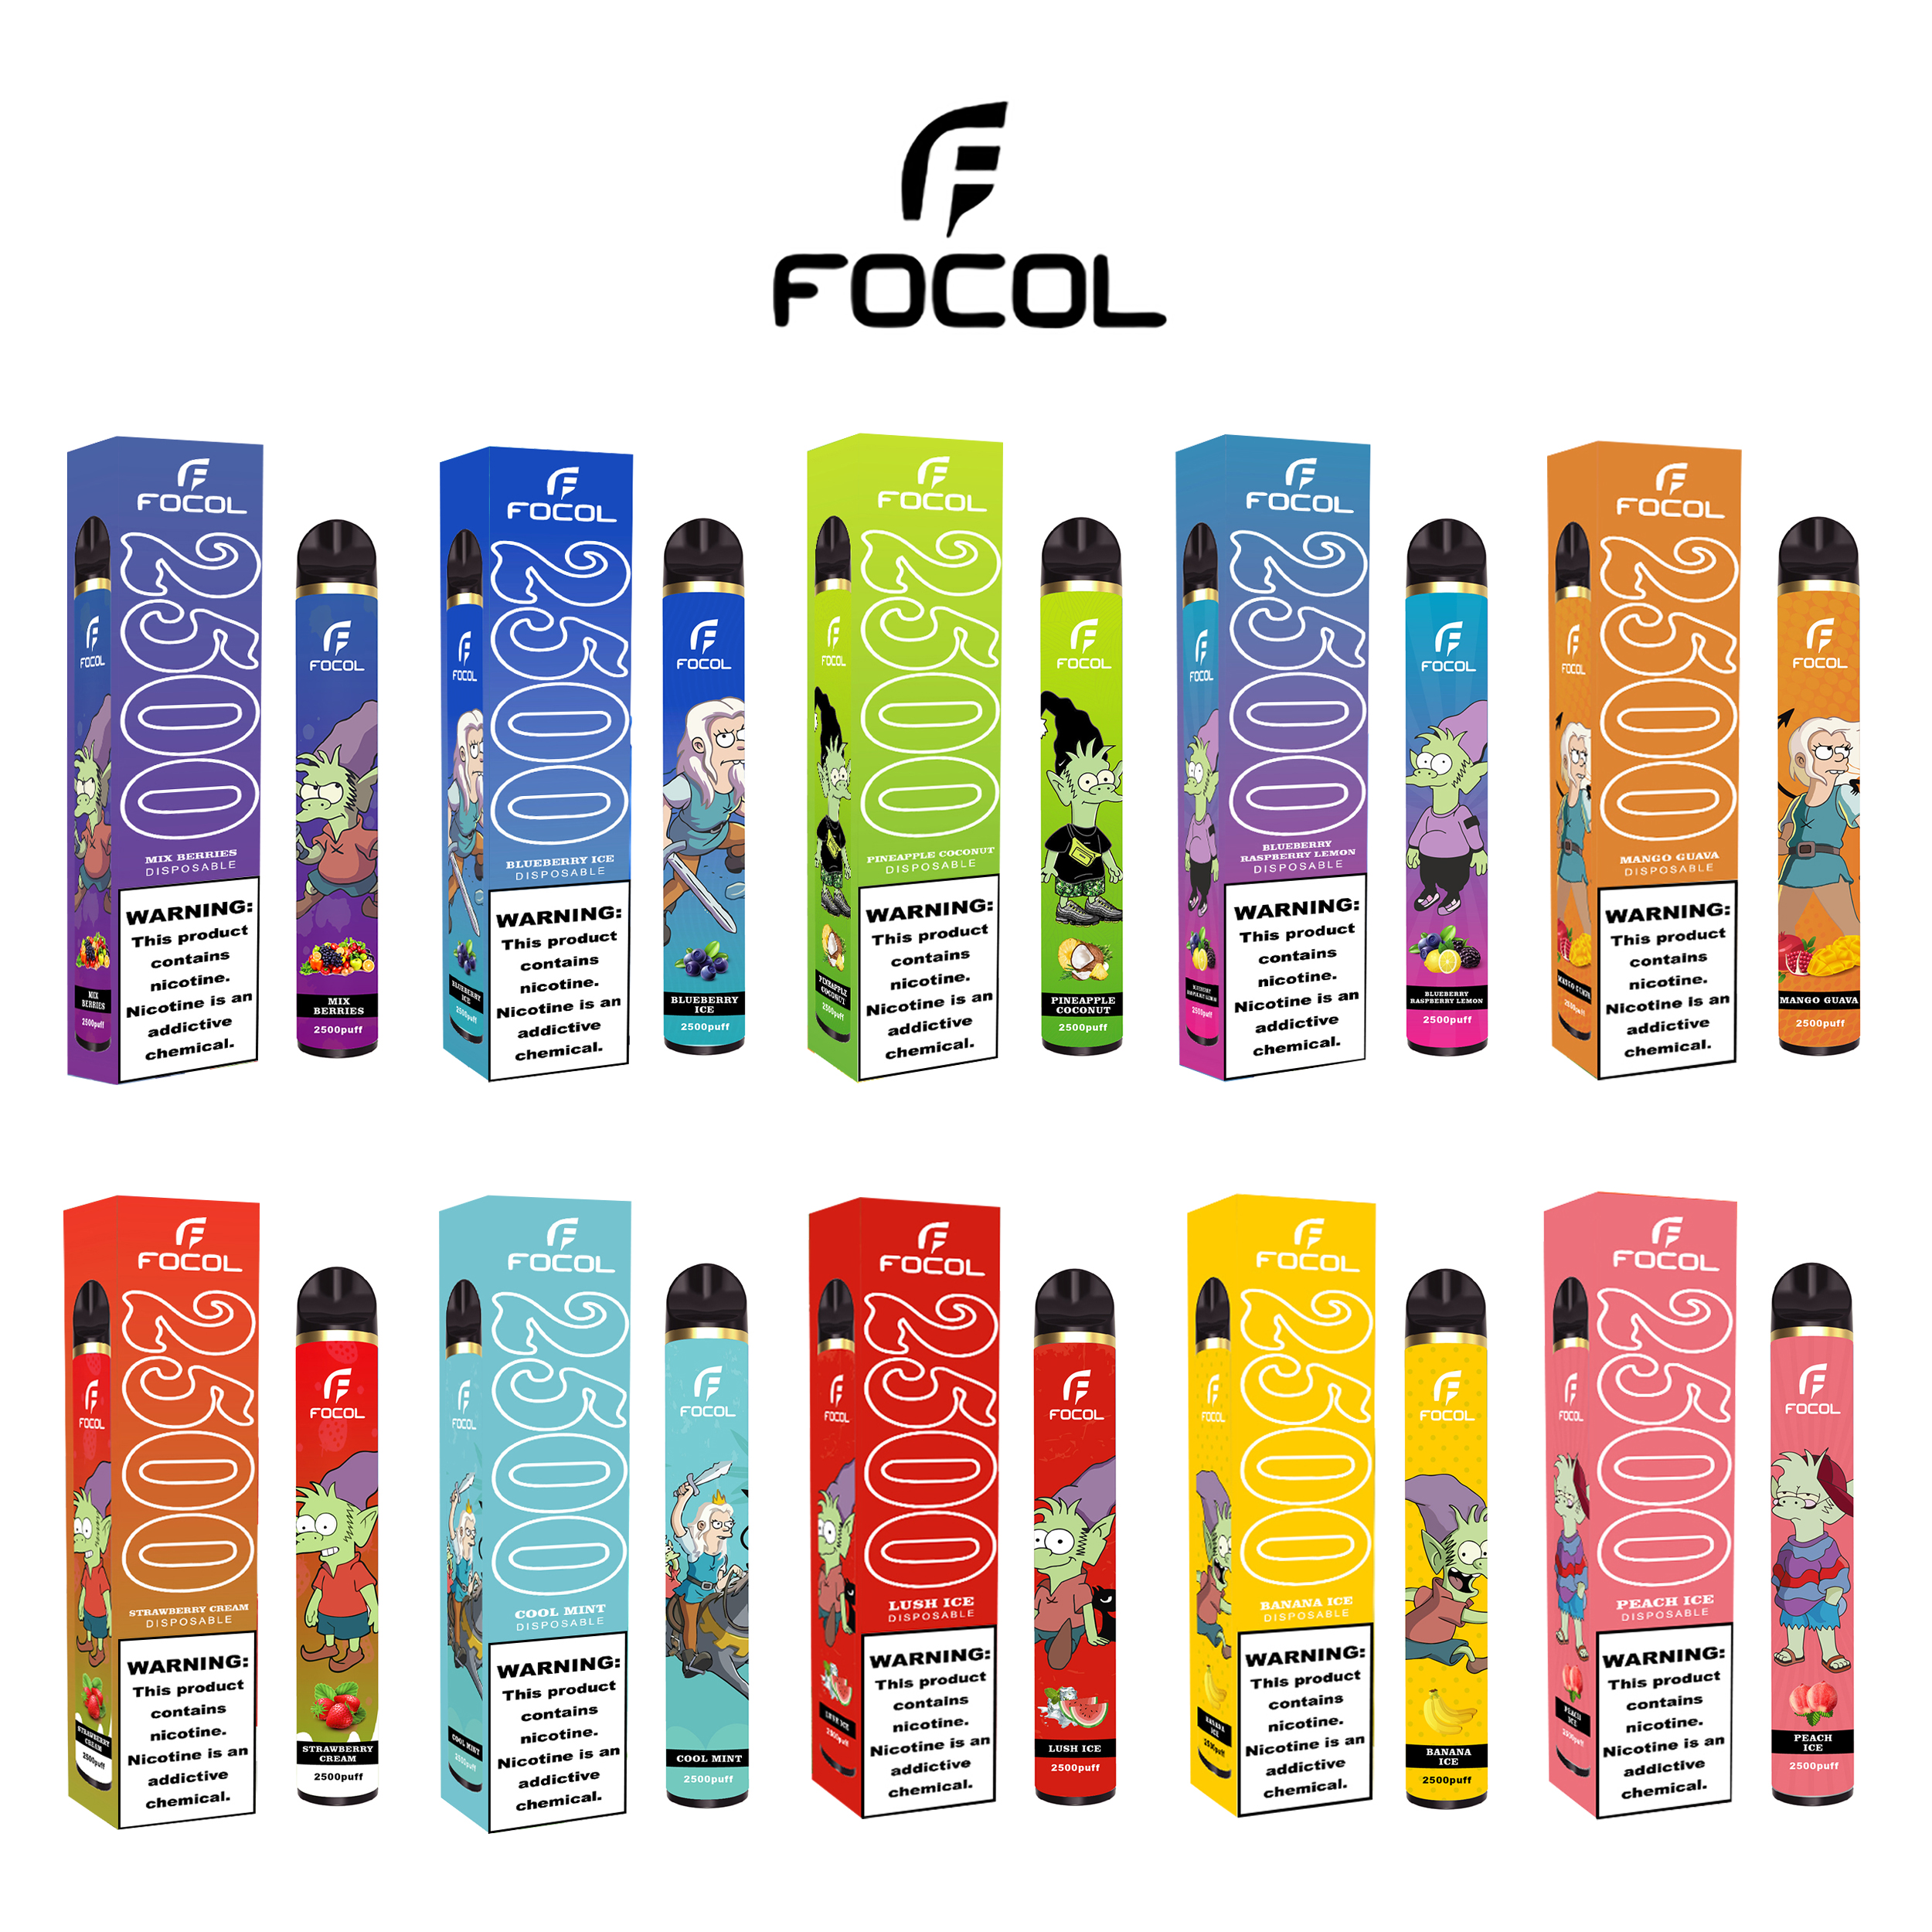  FOCOL Glamee 2500 Puffs Disposable Vape Pen